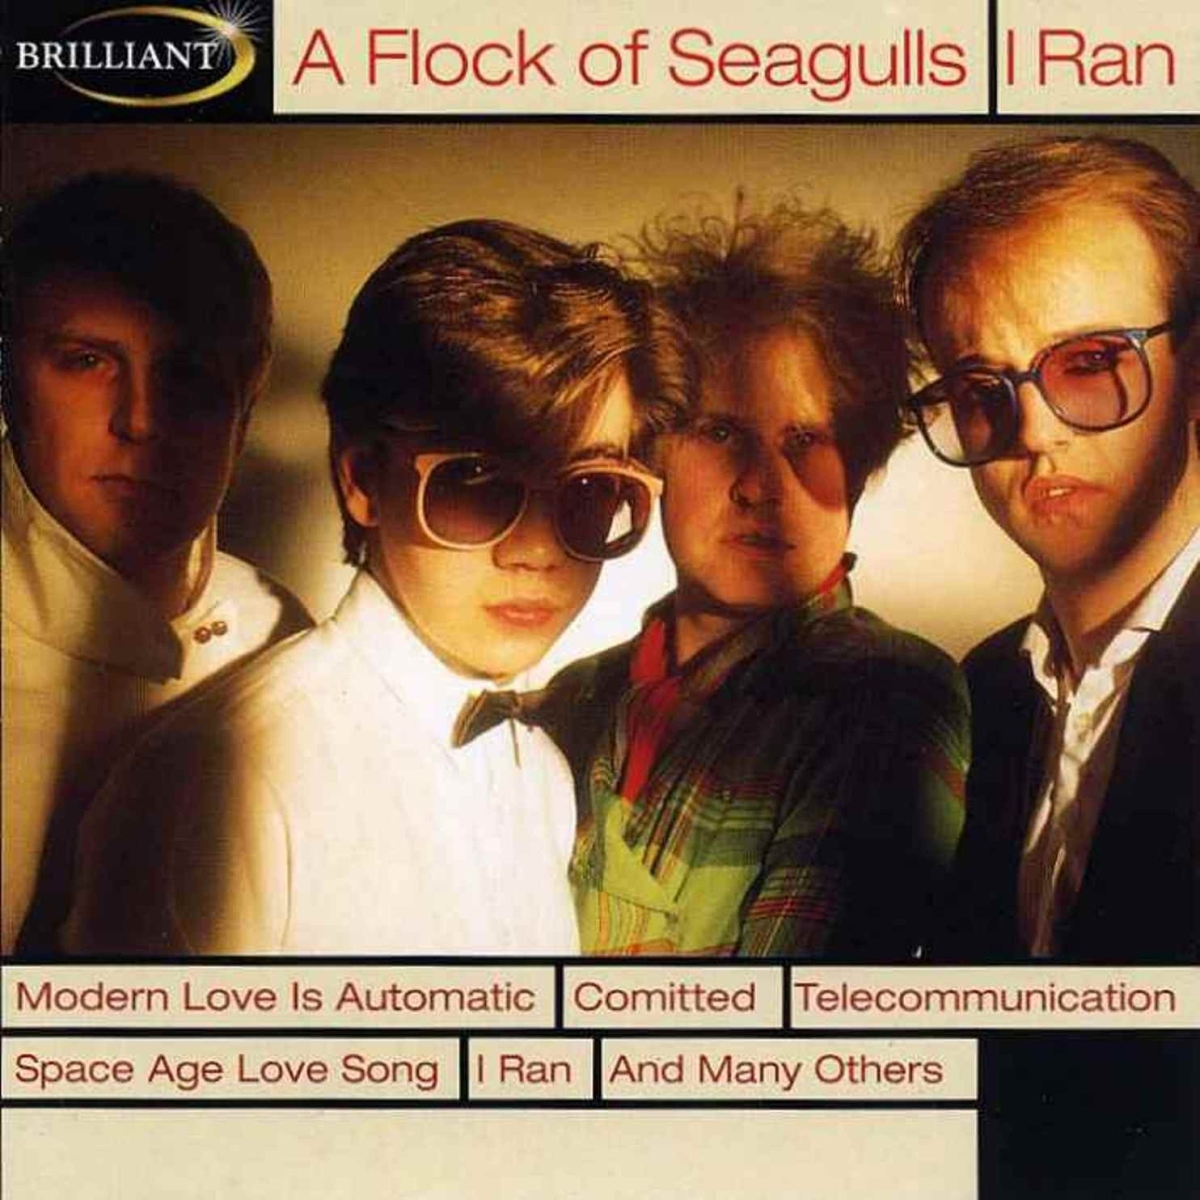 A flock of seagulls. A flock of Seagulls 1982. Группа a flock of Seagulls. A flock of Seagulls i Ran. A flock of Seagulls - i Ran (so far away).